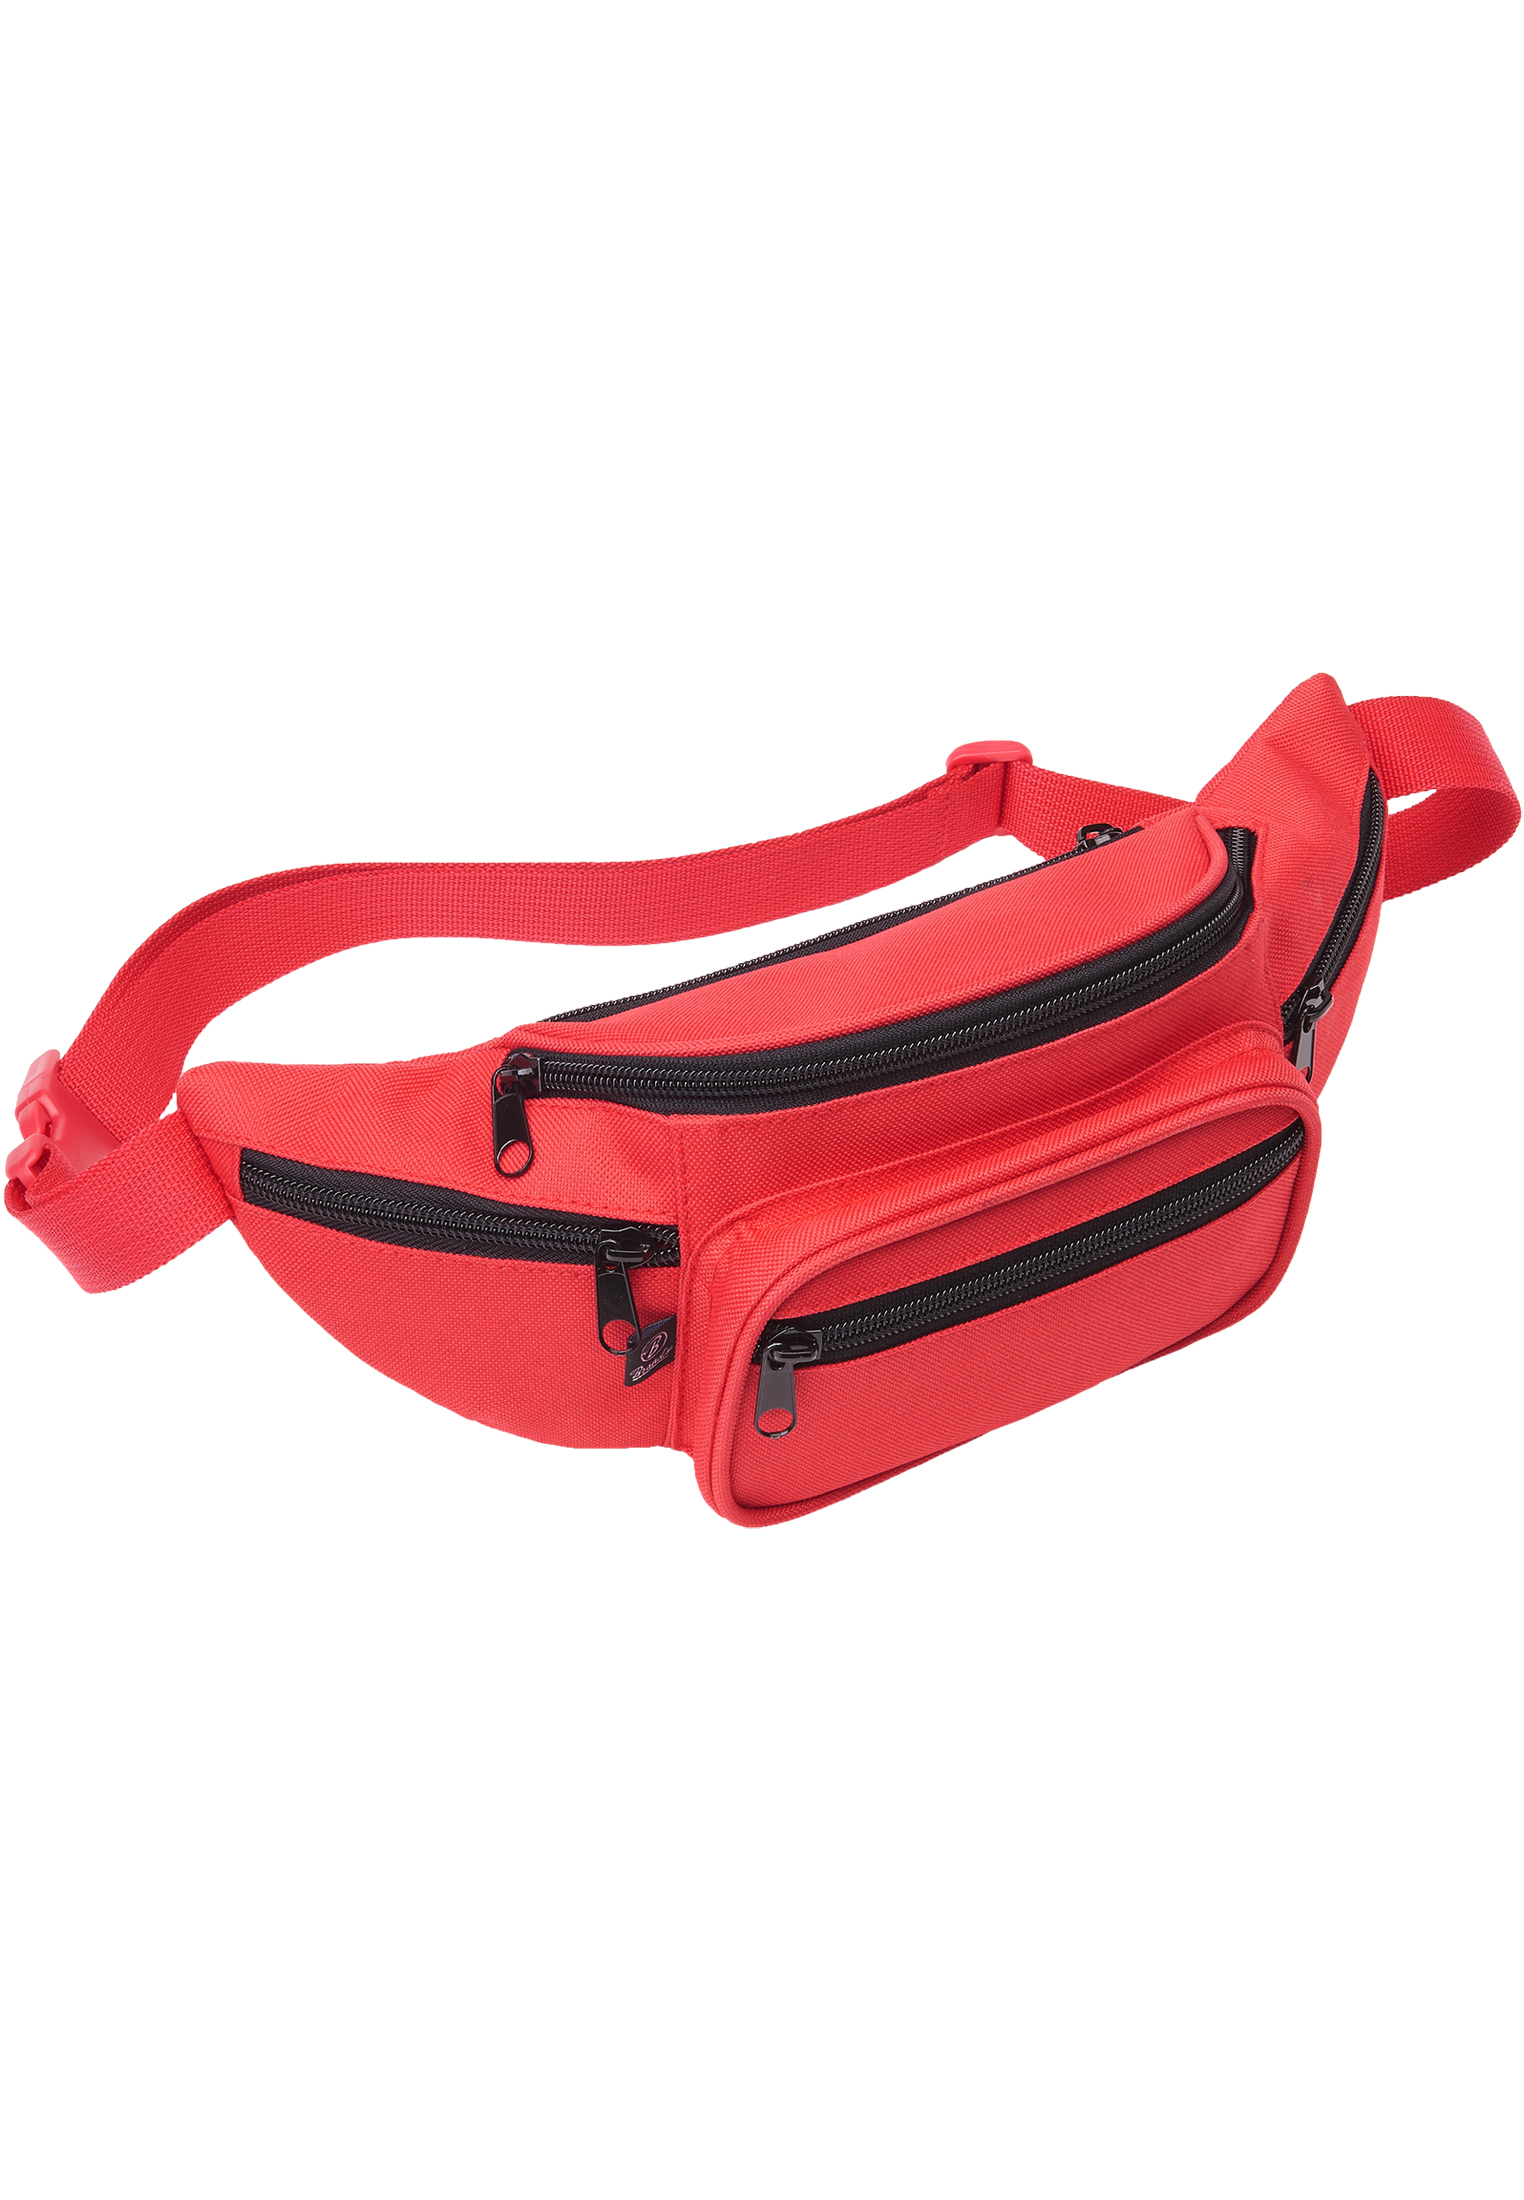 Taschen Pocket Hip Bag in Farbe red/blk